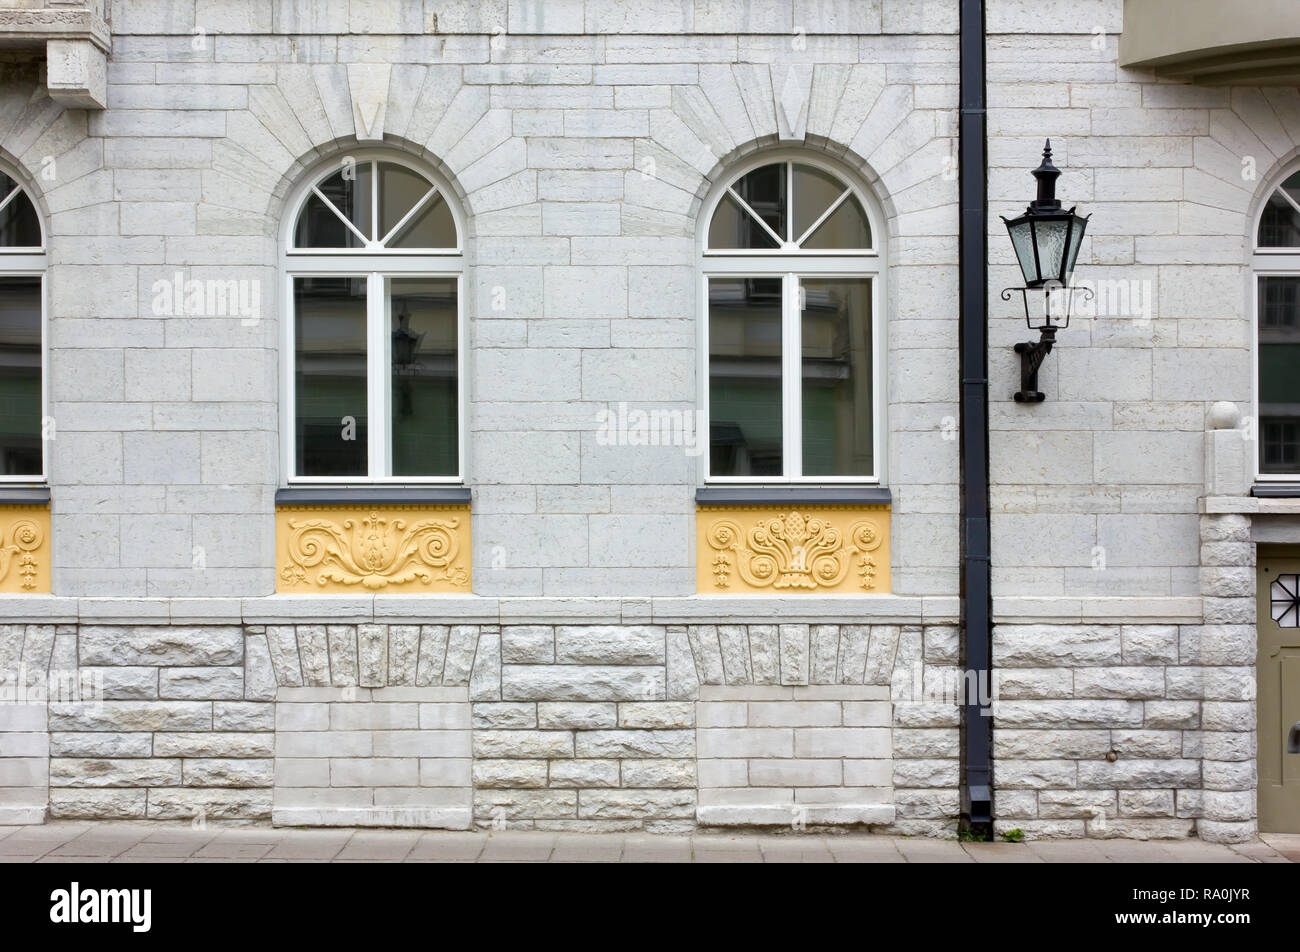 TALLINN, Estland - 21. Juli 2013: Fassade eines eleganten städtischen Gebäude Stockfoto